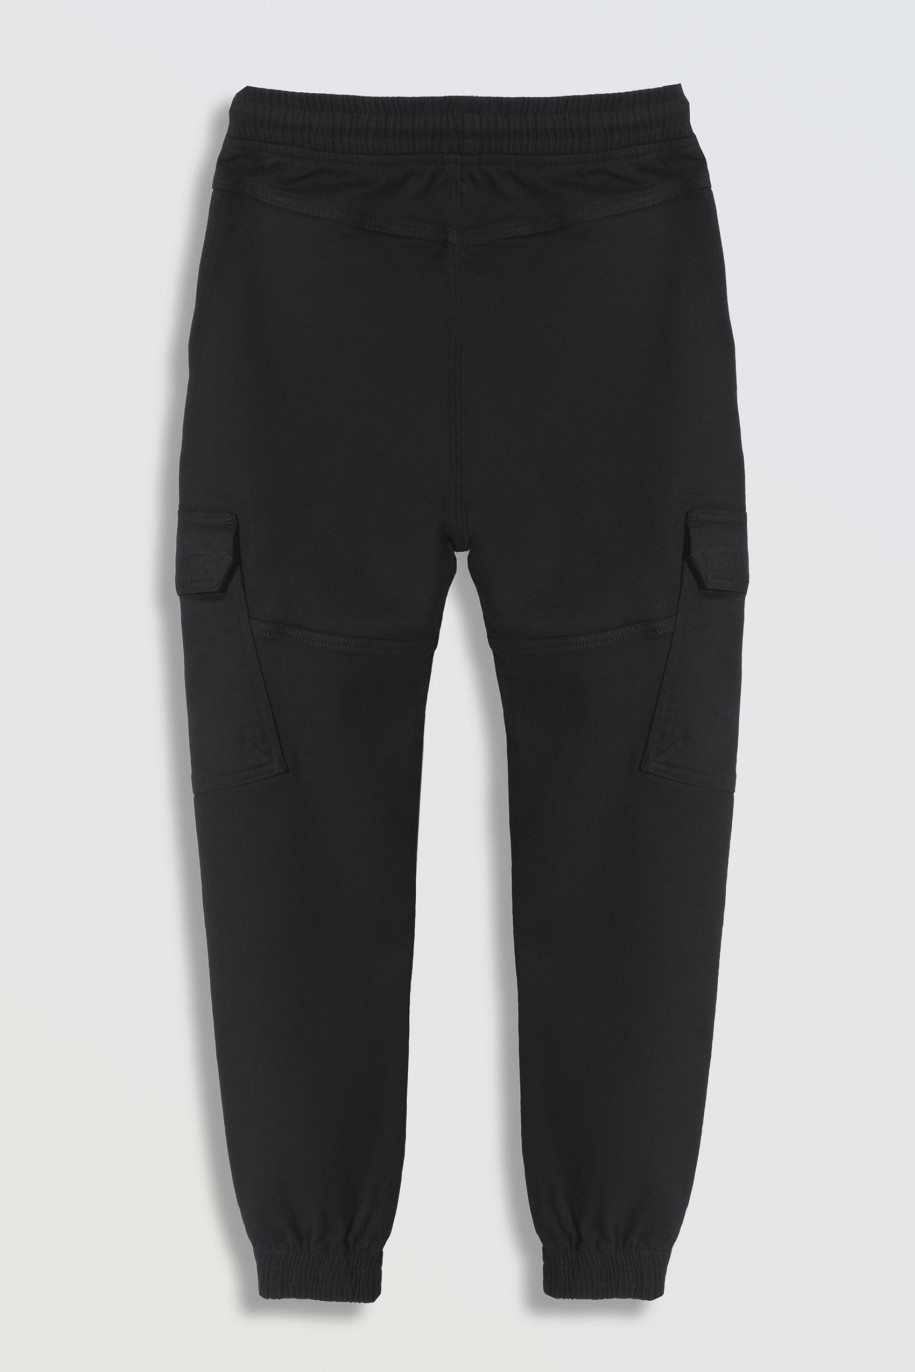 Czarne spodnie typu bojówki z przestrzennymi kieszeniami - 46247